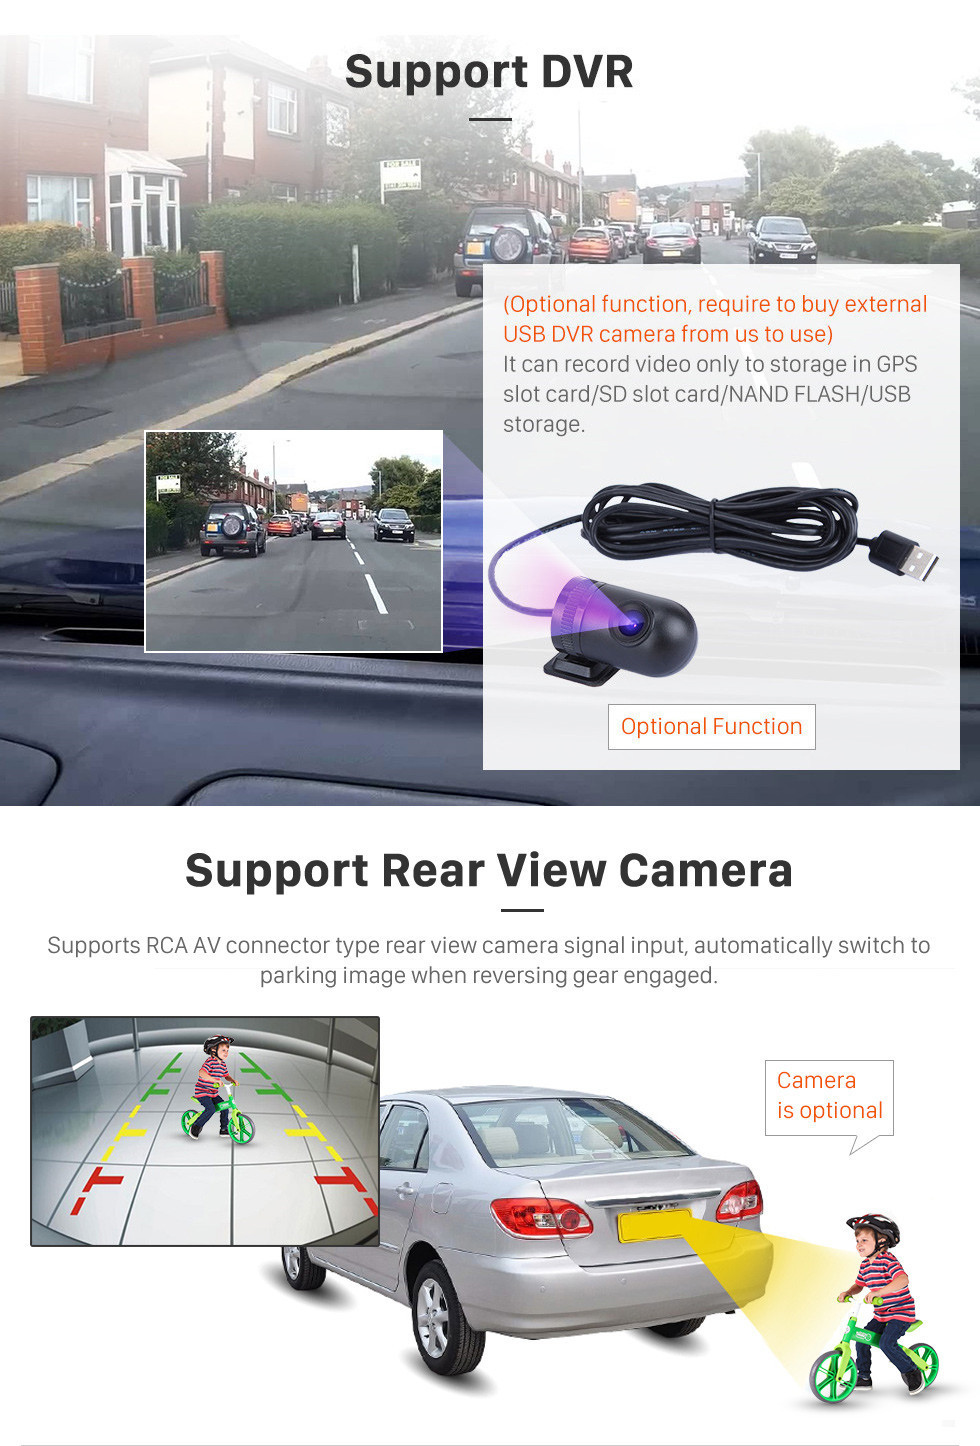 Seicane 10,1-дюймовый Android 11.0 GPS-навигатор для 2017-2019 Venucia M50V с сенсорным экраном HD Carplay Поддержка Bluetooth OBD2